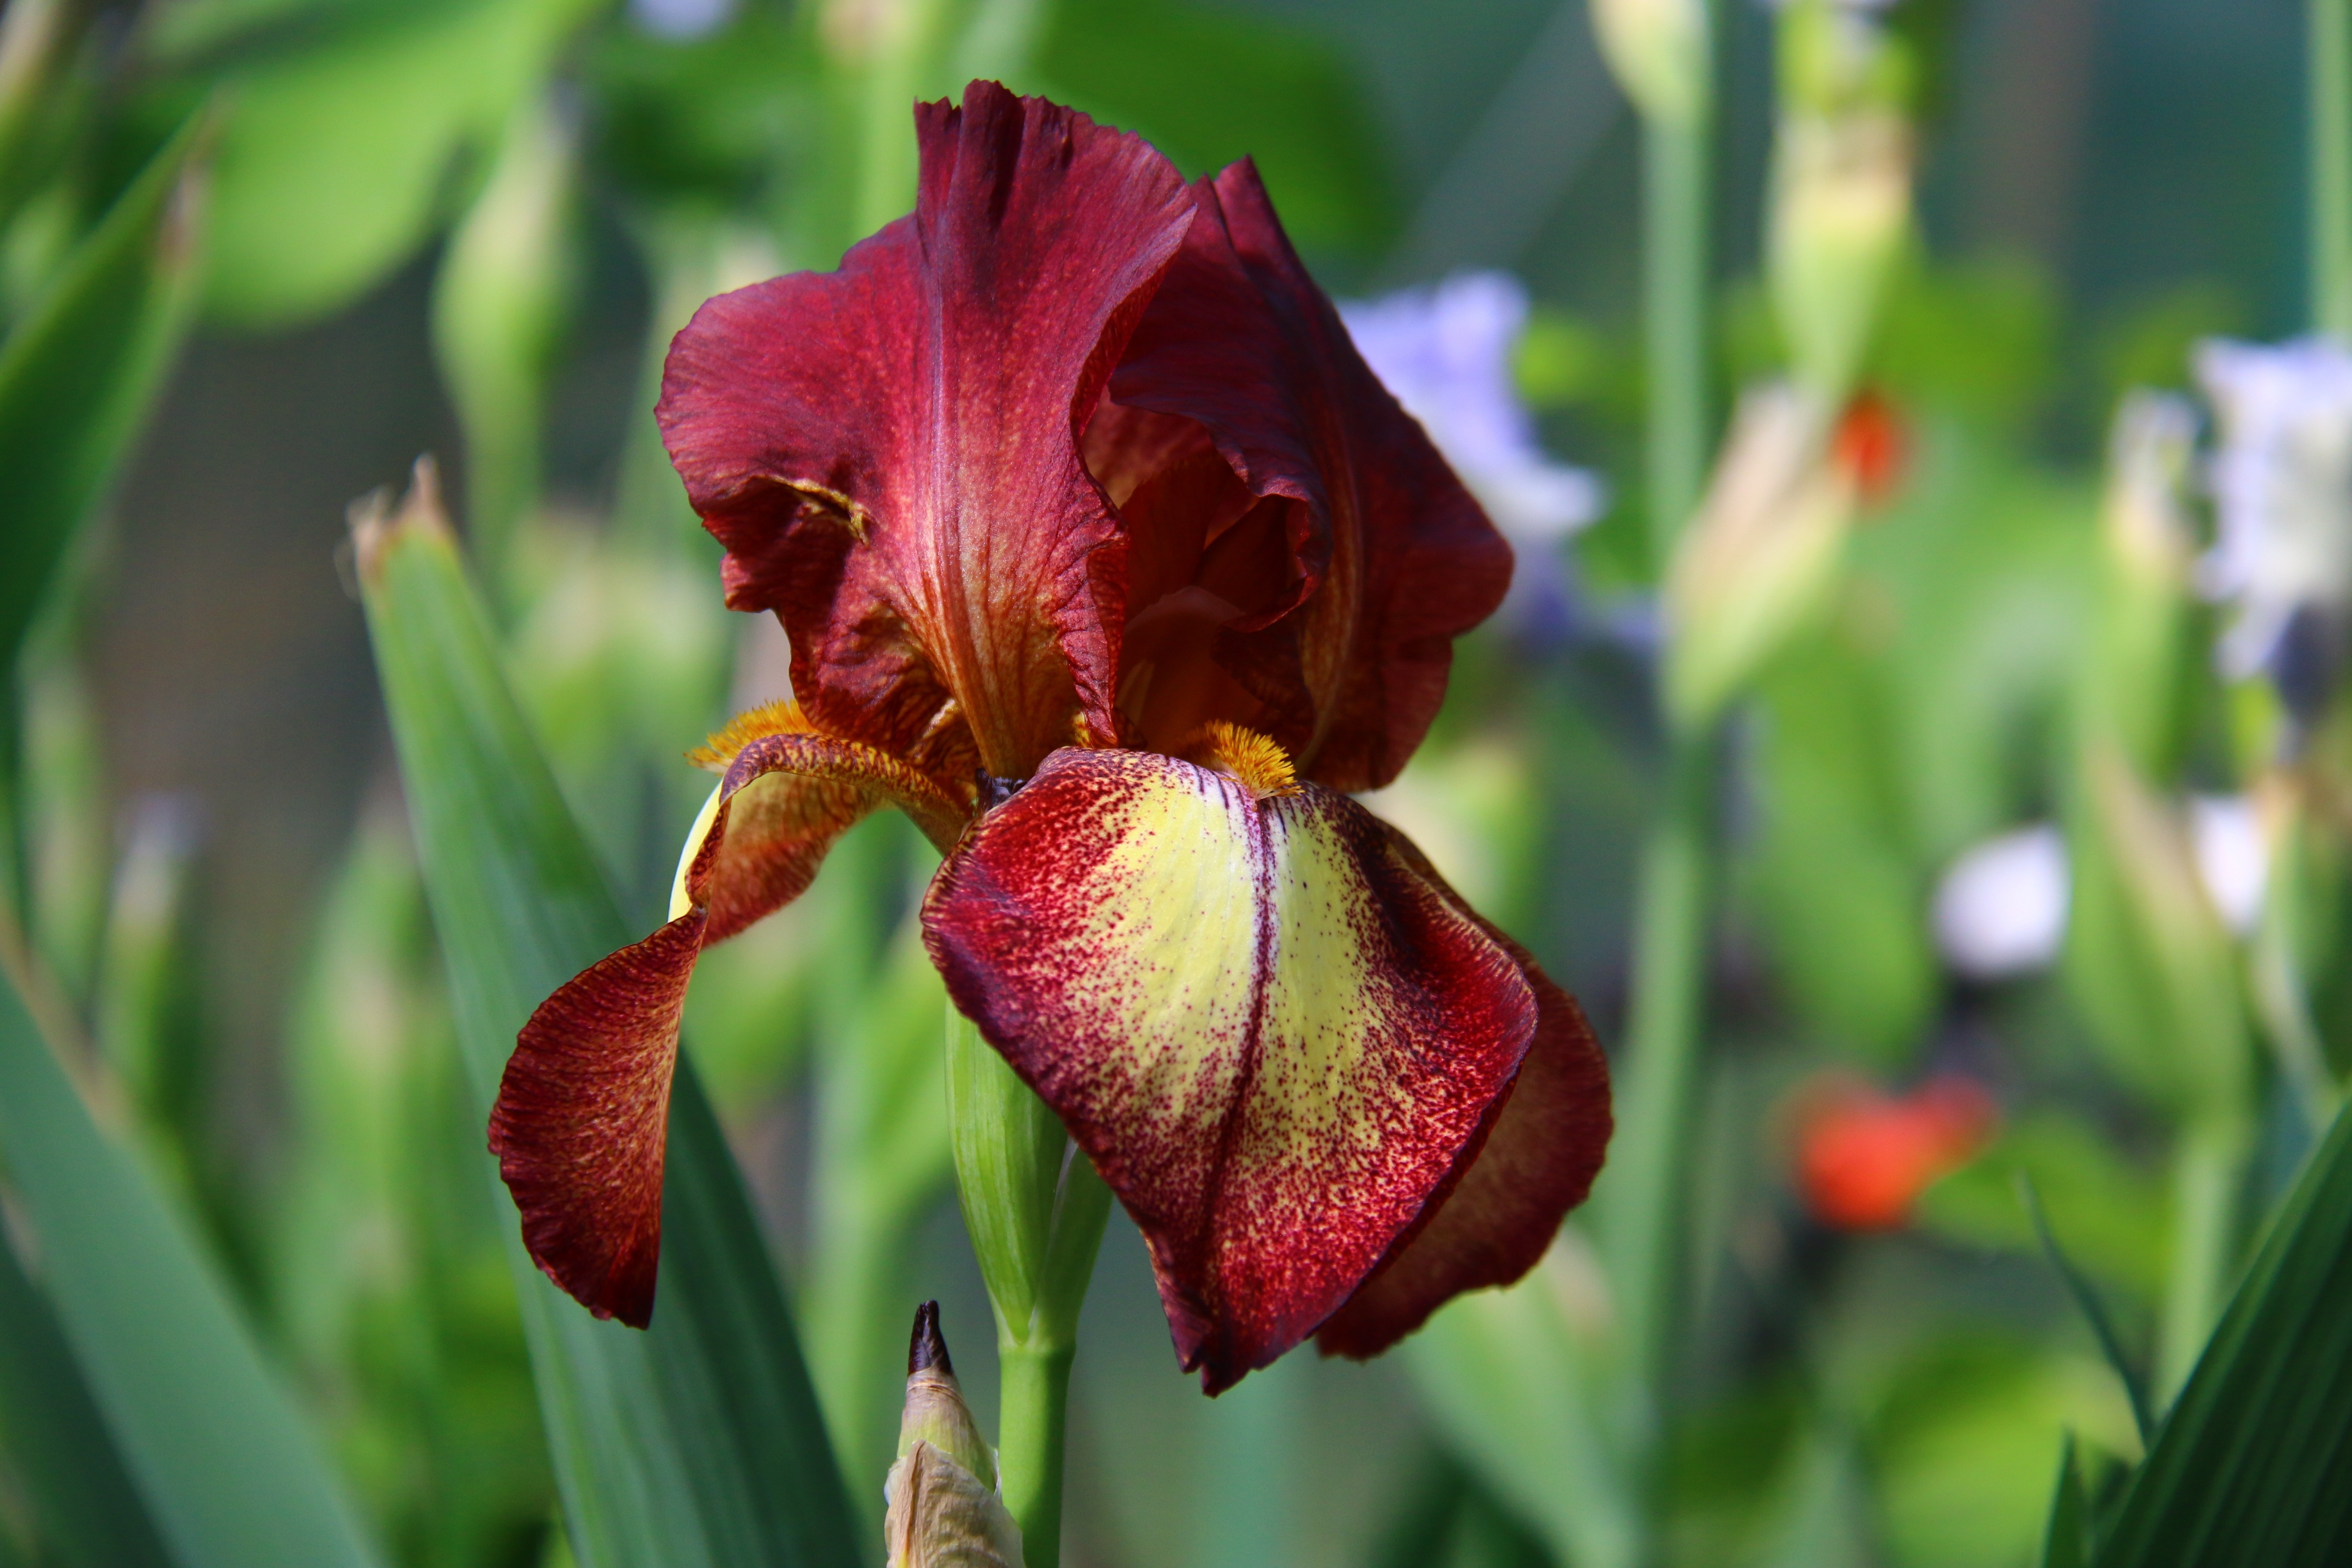 Burgundy Flowers, Nature, Iris, Garden, flower, freshness